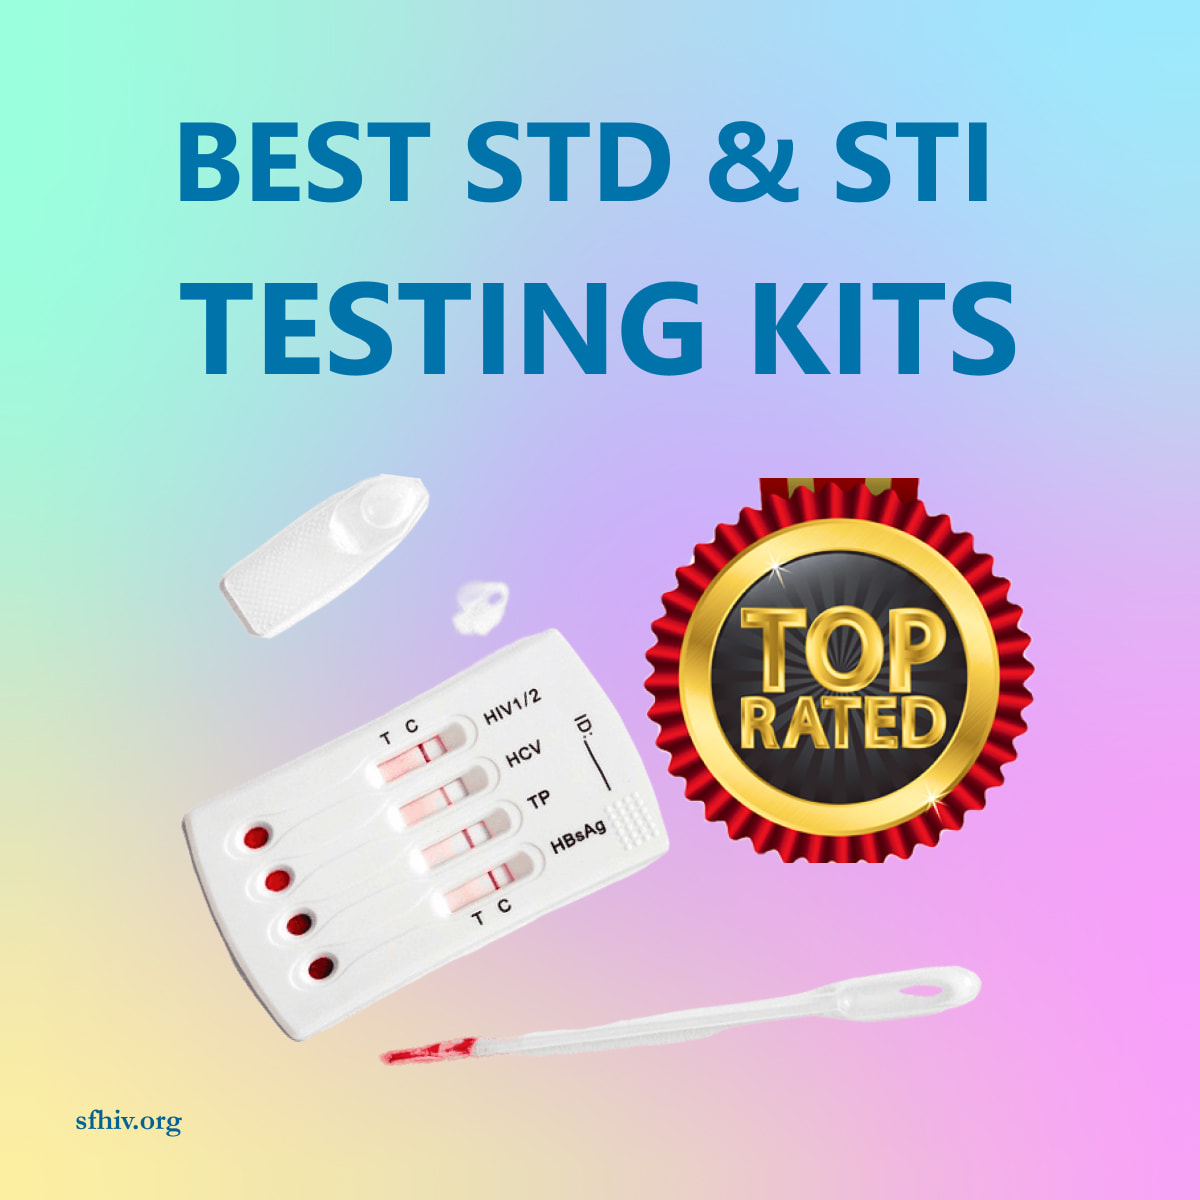 Best STD & STI Testing Kits